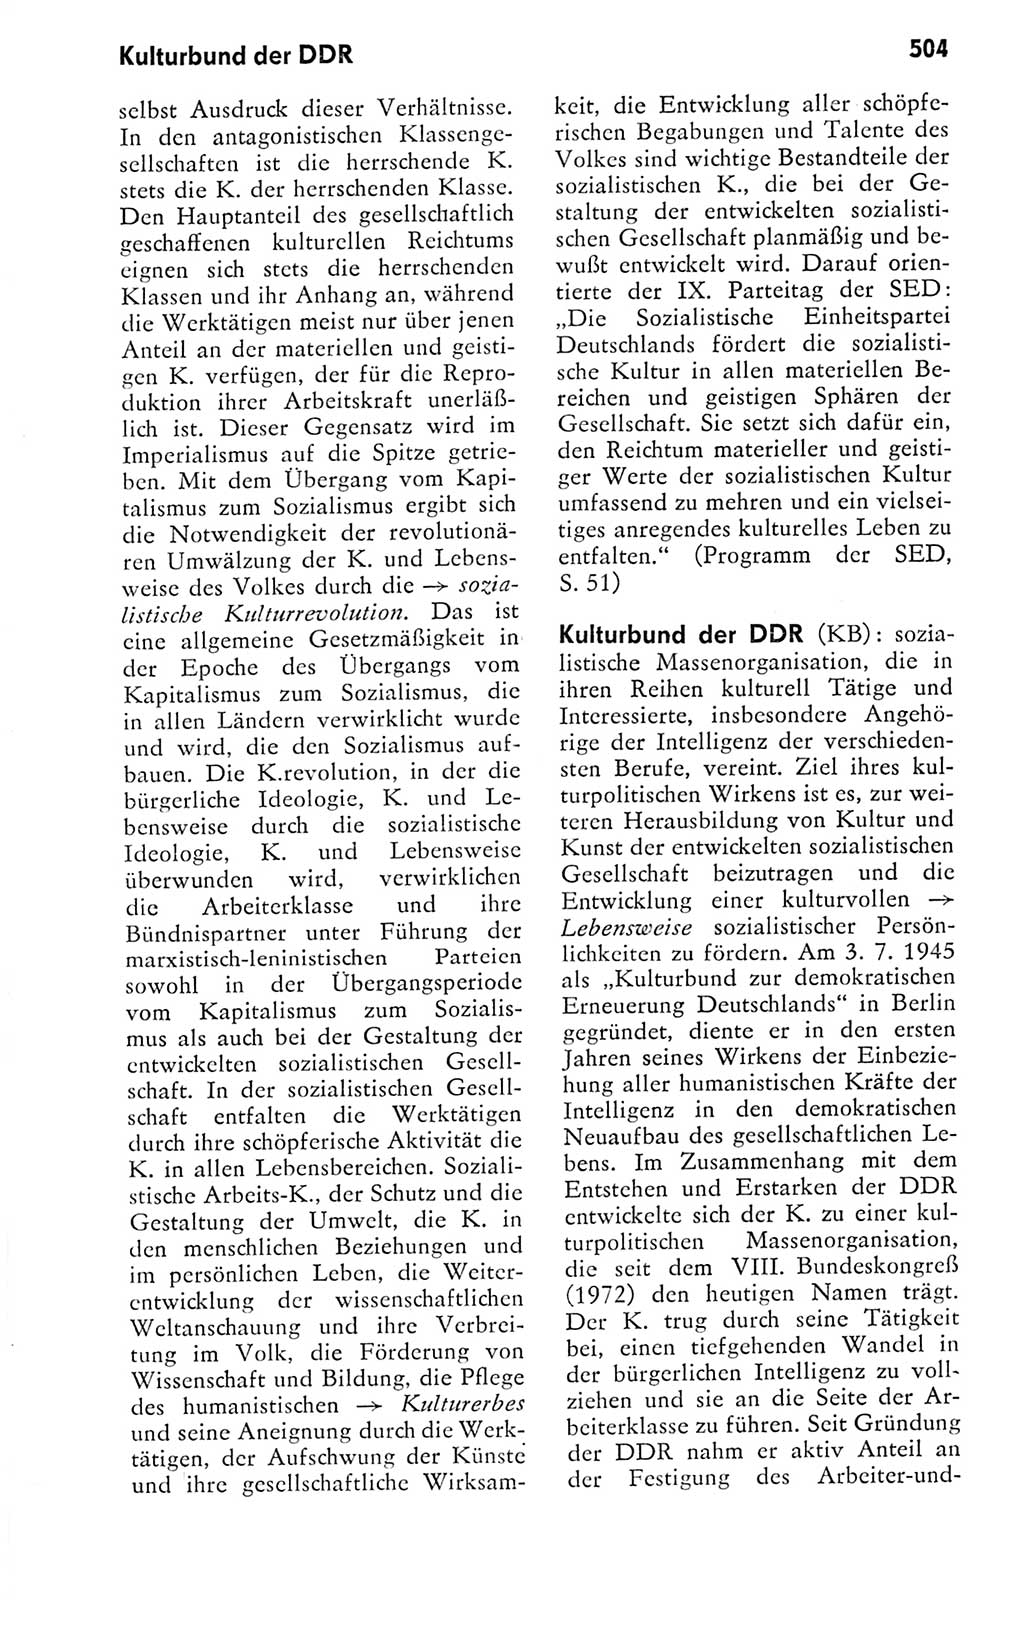 Kleines politisches Wörterbuch [Deutsche Demokratische Republik (DDR)] 1978, Seite 504 (Kl. pol. Wb. DDR 1978, S. 504)